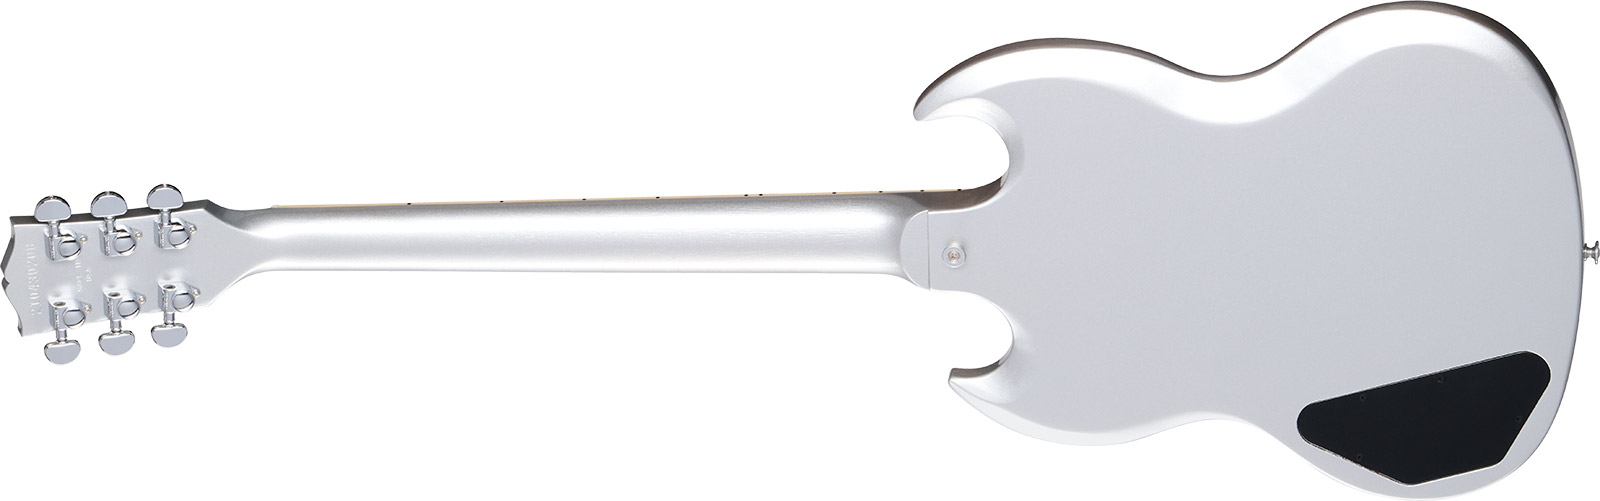 Gibson Sg Standard Custom Color 2h Ht Rw - Silver Mist - Guitare Électrique Double Cut - Variation 1